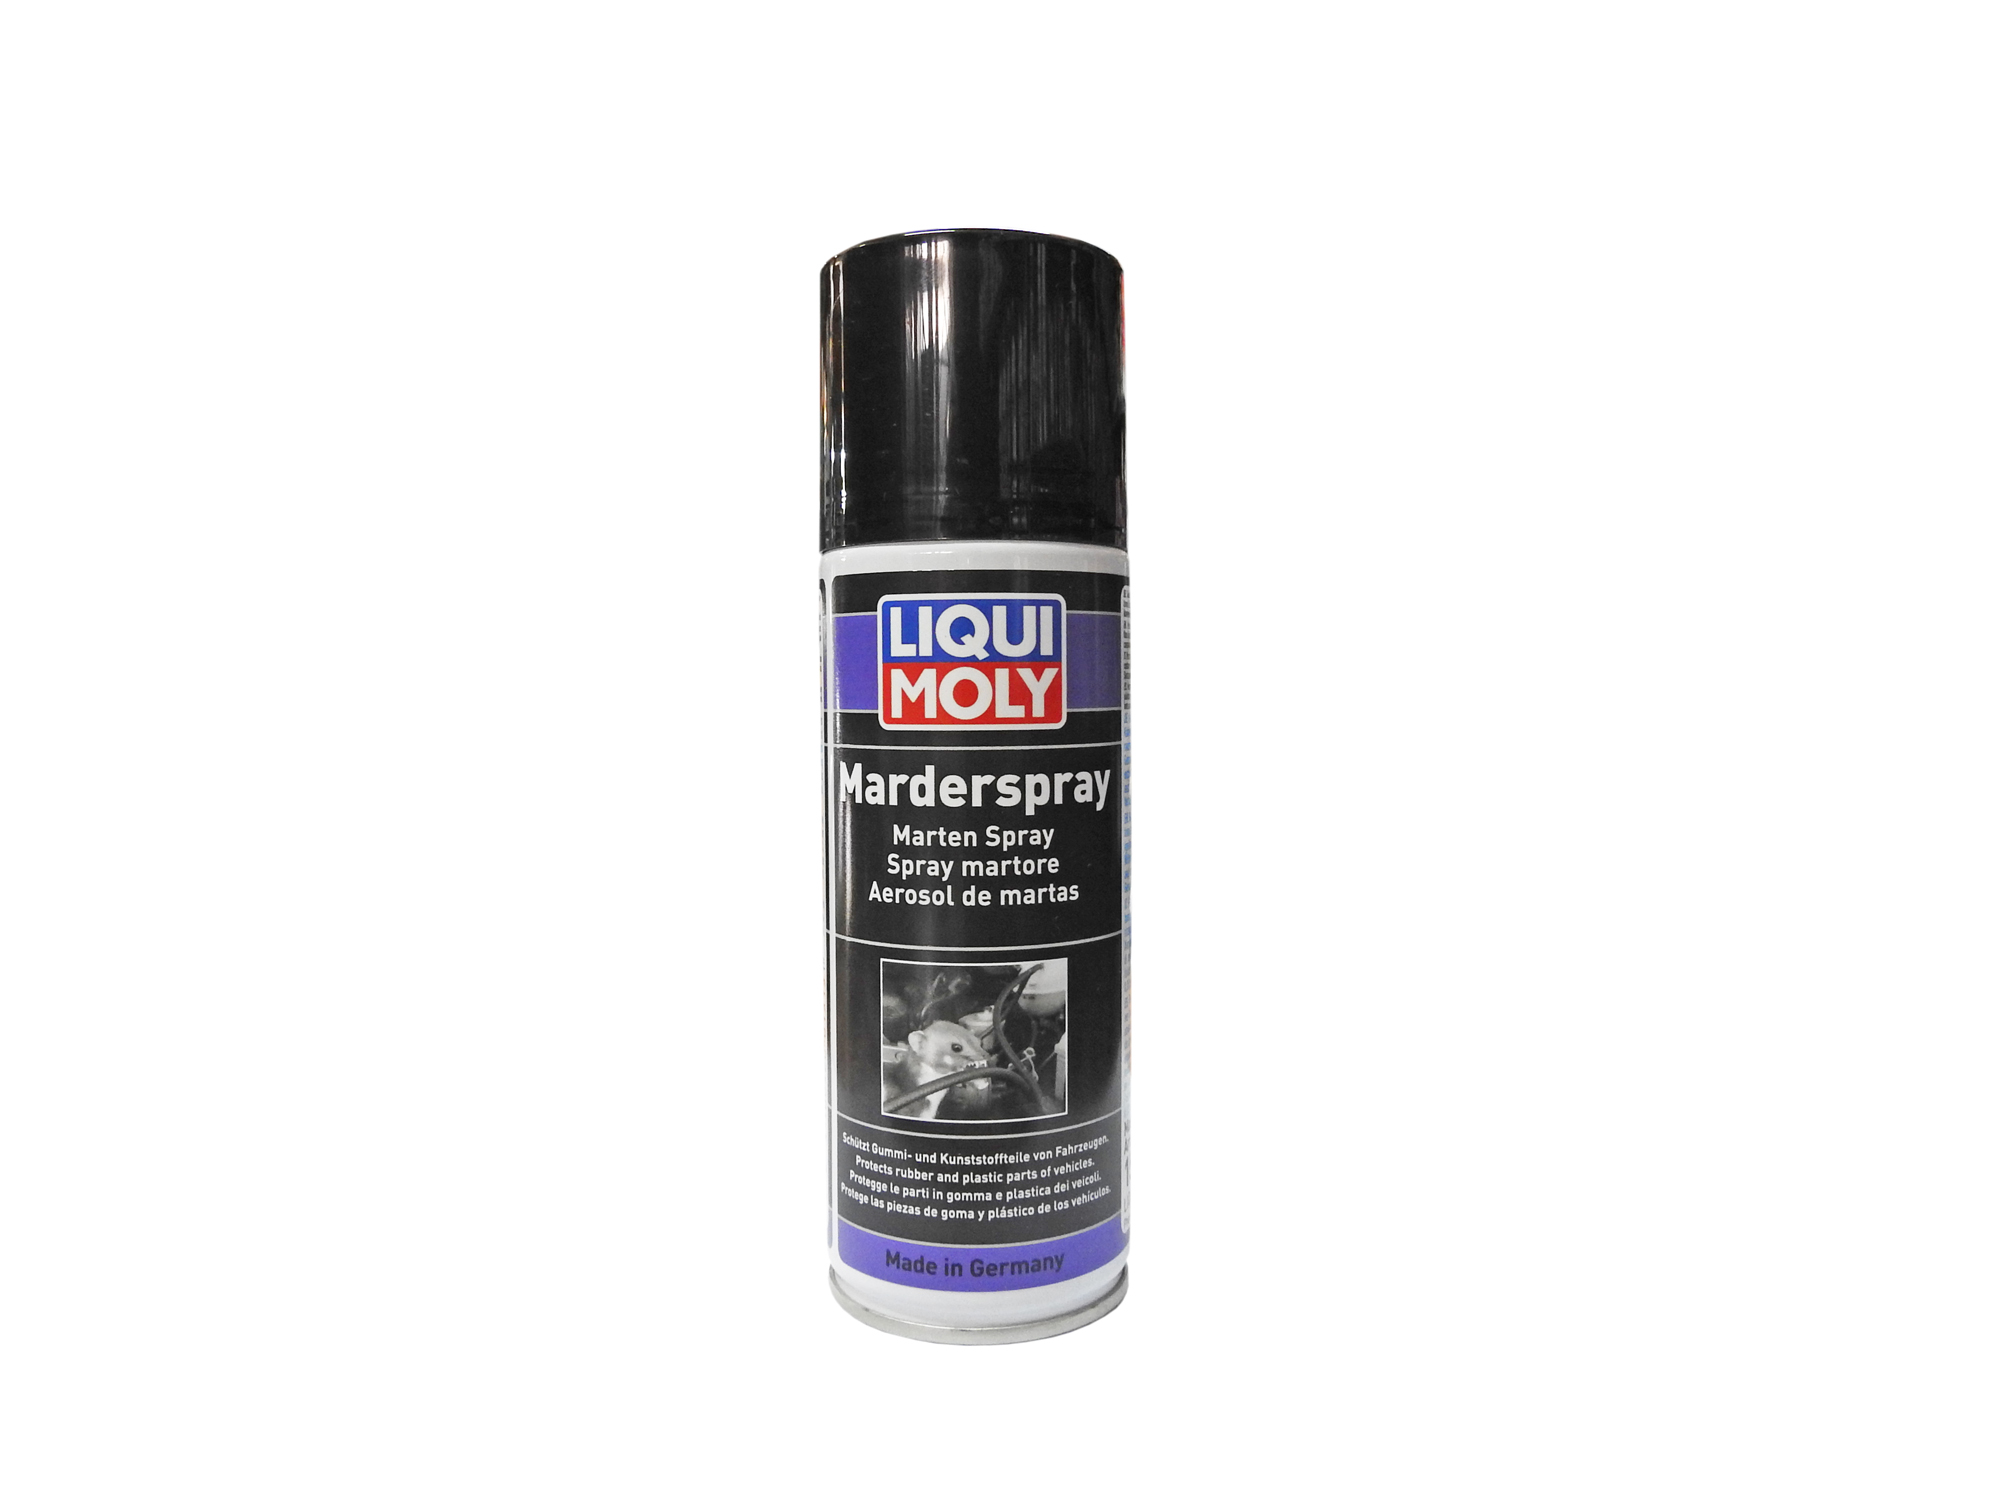 Buy Liqui Moly Marten Spray (Rat Repellent) 200 ML Online at Best